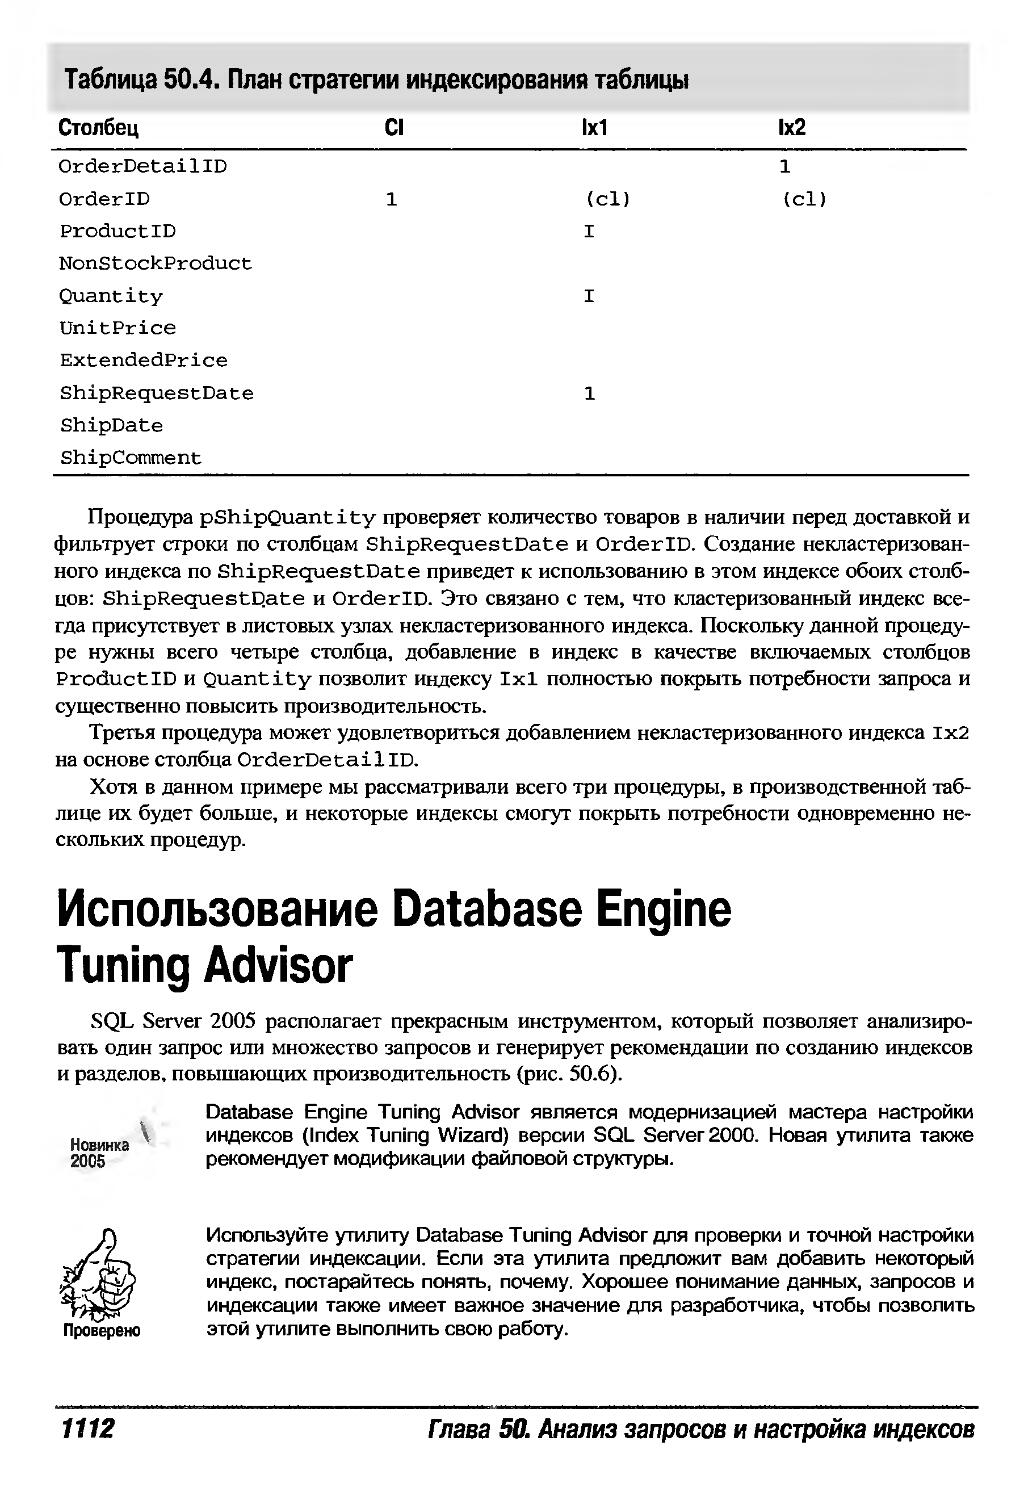 Использование Database Engine Tuning Advisor